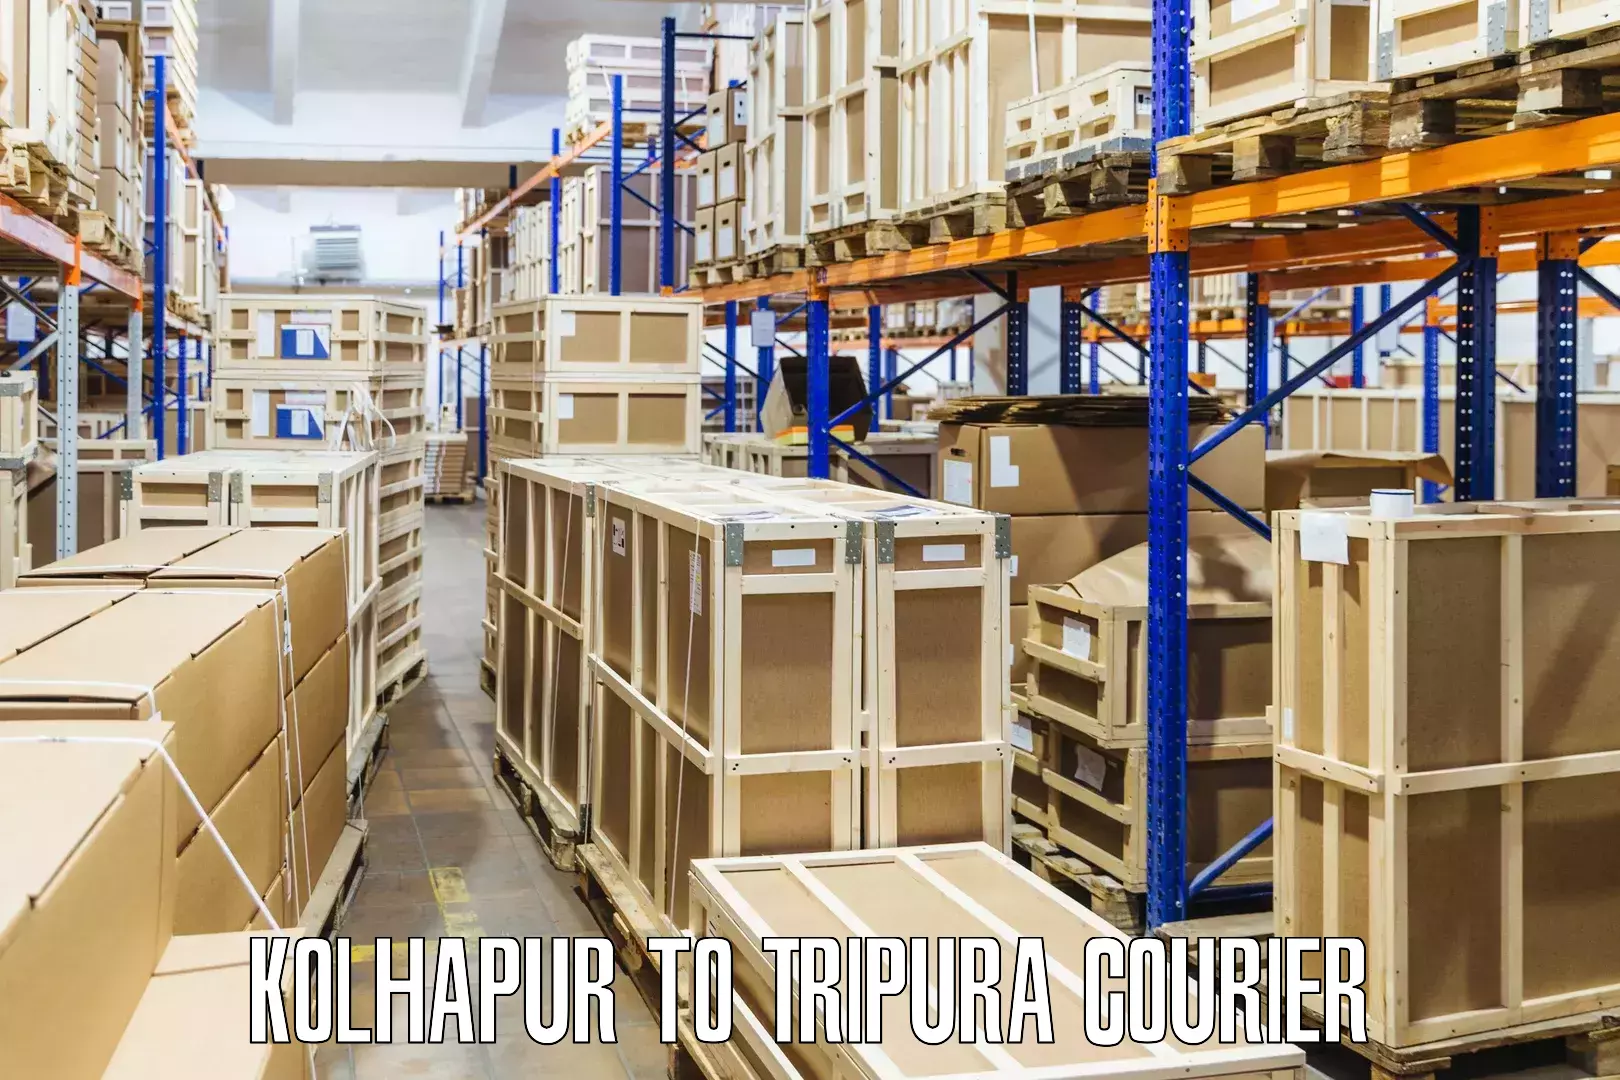 Courier app Kolhapur to Manu Bazar